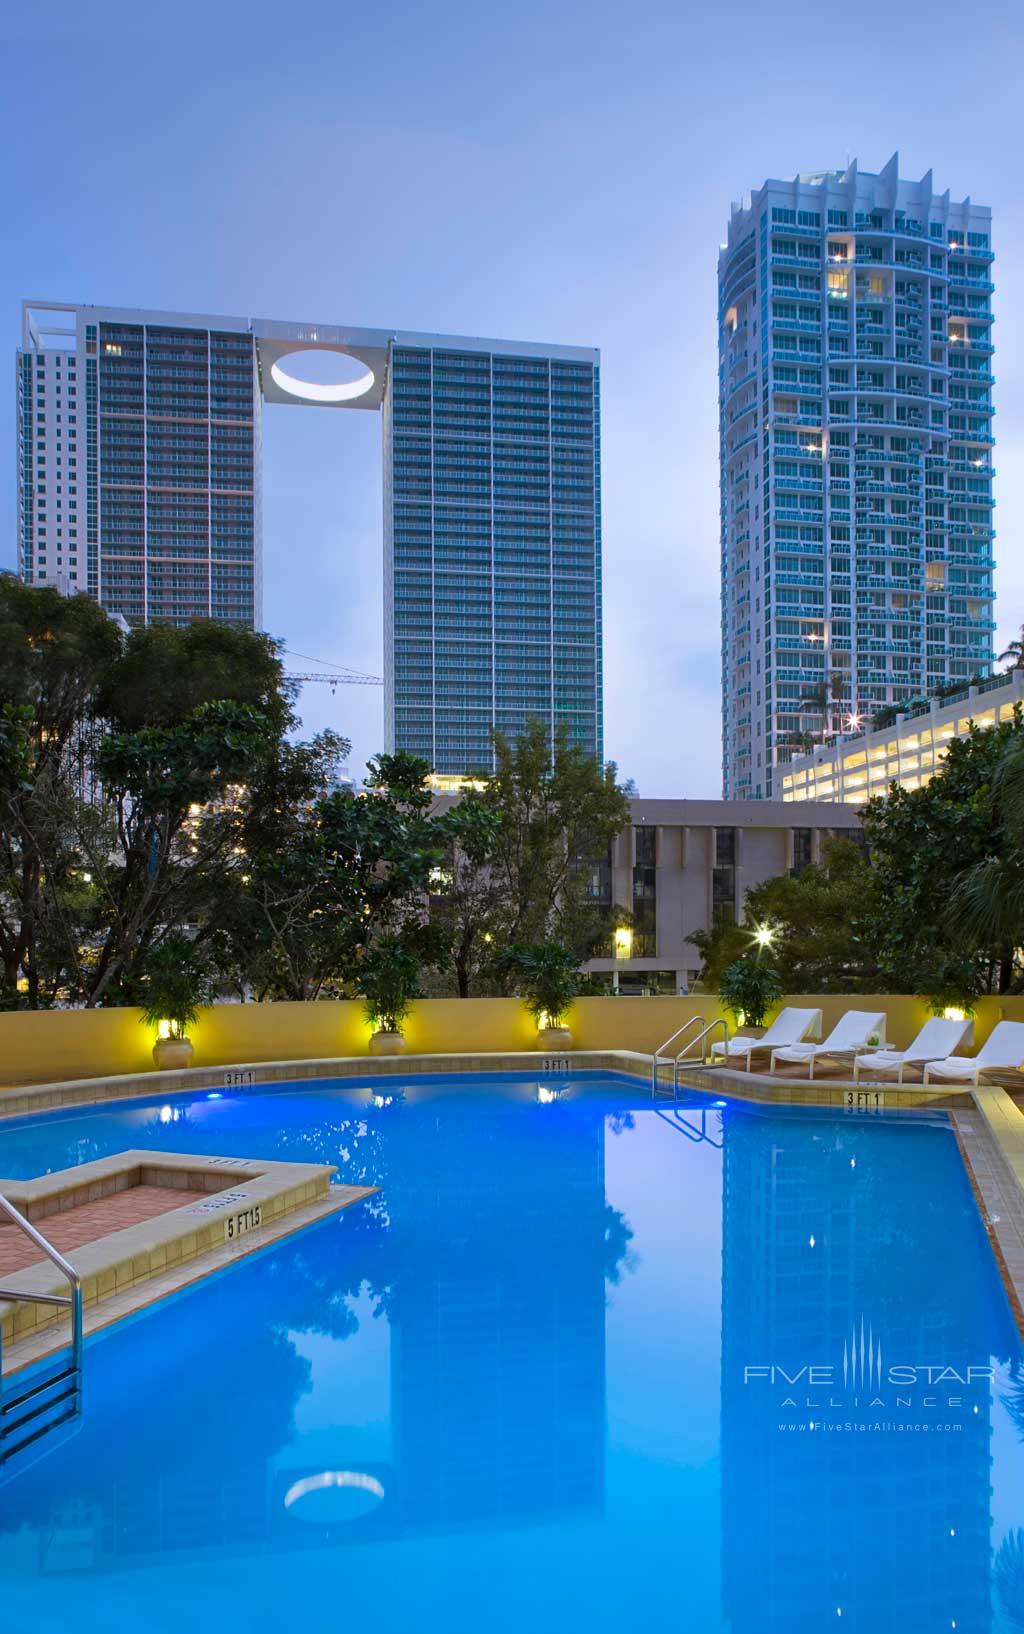 Outdoor Pool at Hyatt Regency Miami, Miami, FL